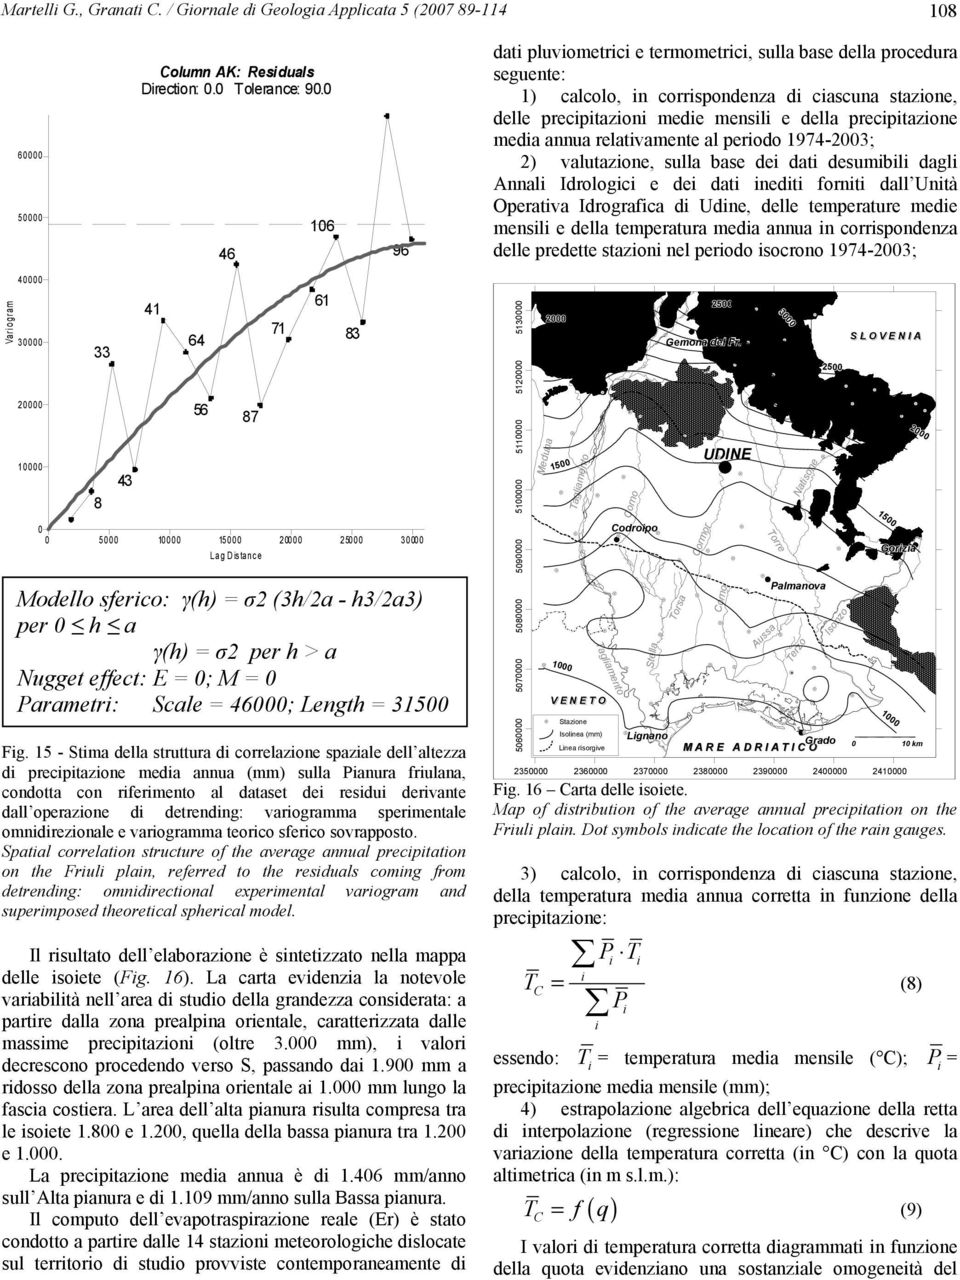 dati desumibili dagli Annali Idrologici e dei dati inediti forniti dall Unità Operativa Idrografica di Udine, delle temperature medie mensili e della temperatura media annua in corrispondenza delle